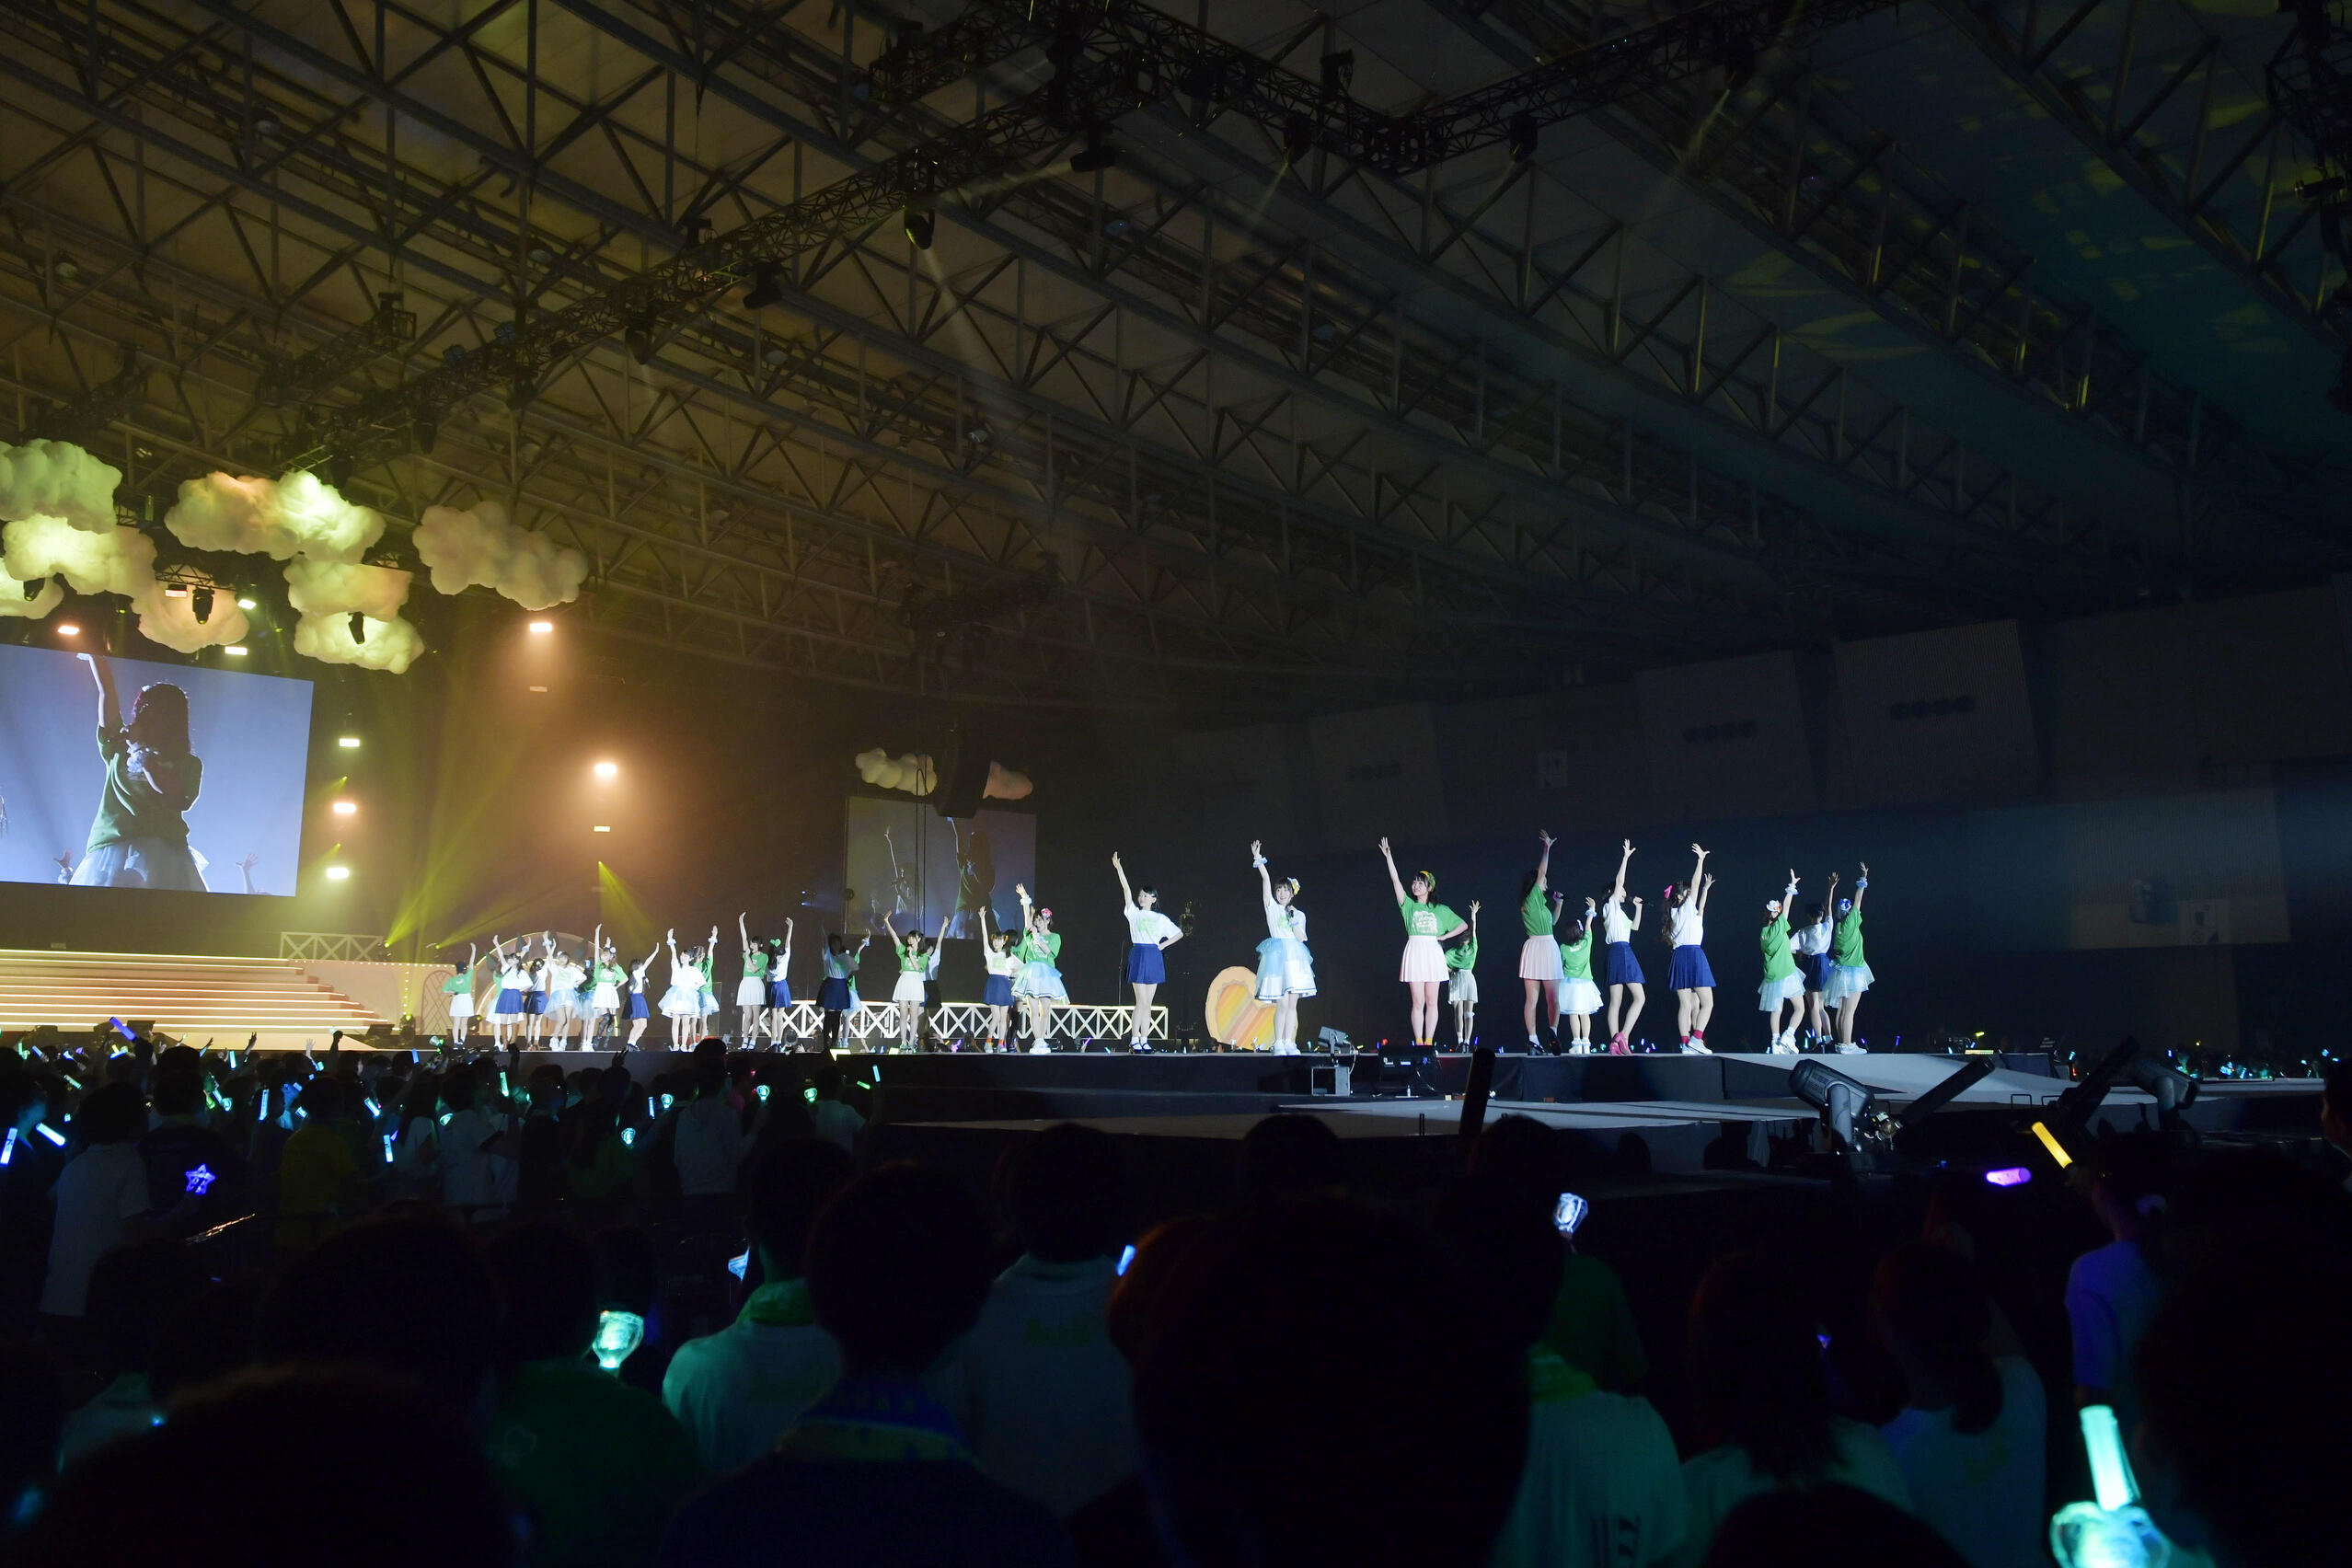 Tokyo 7th シスターズ 5th Anniversary Live ライブレポートday2 過去最大規模となる幕張メッセ9 11ホールで2daysライブ開催 新情報の発表も 歌ネット